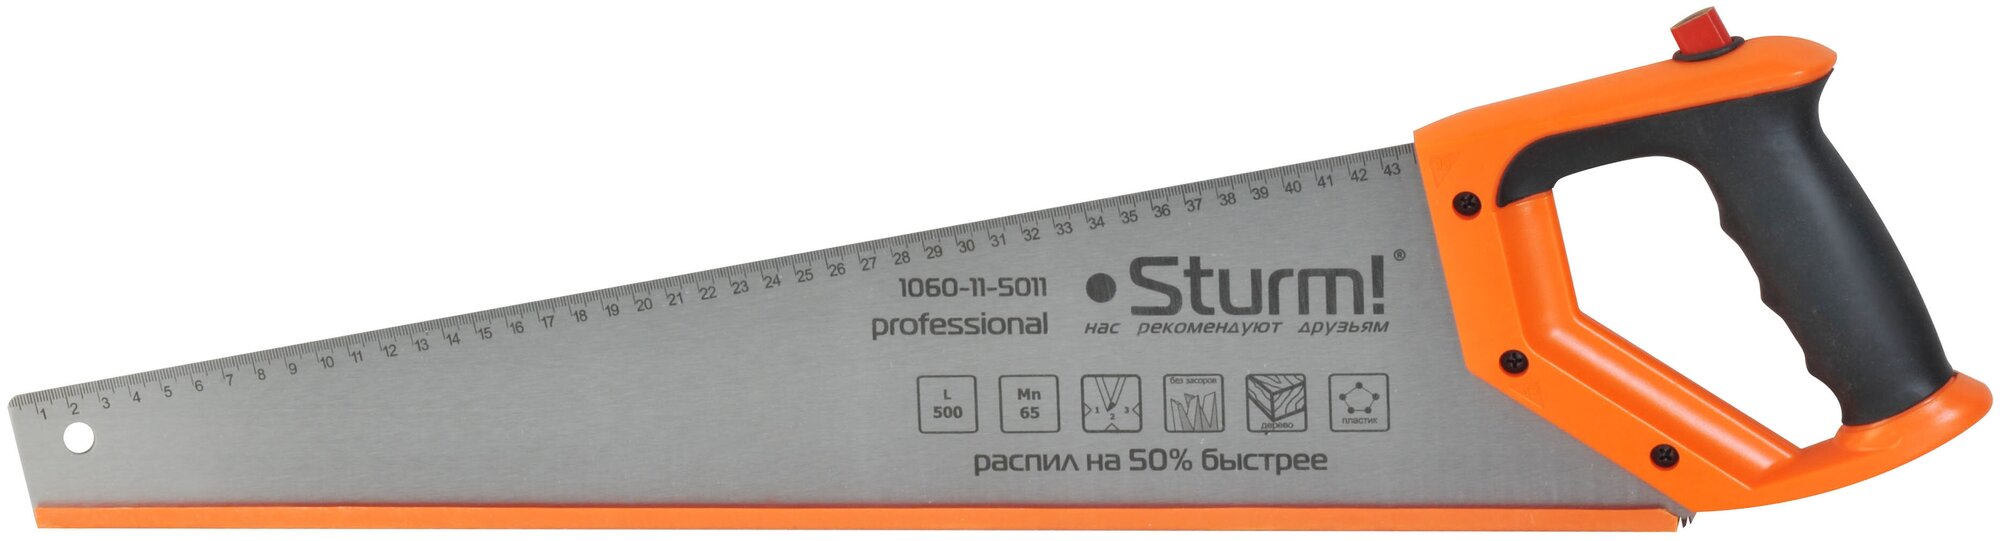 Ножовка Sturm 1060-11-5011